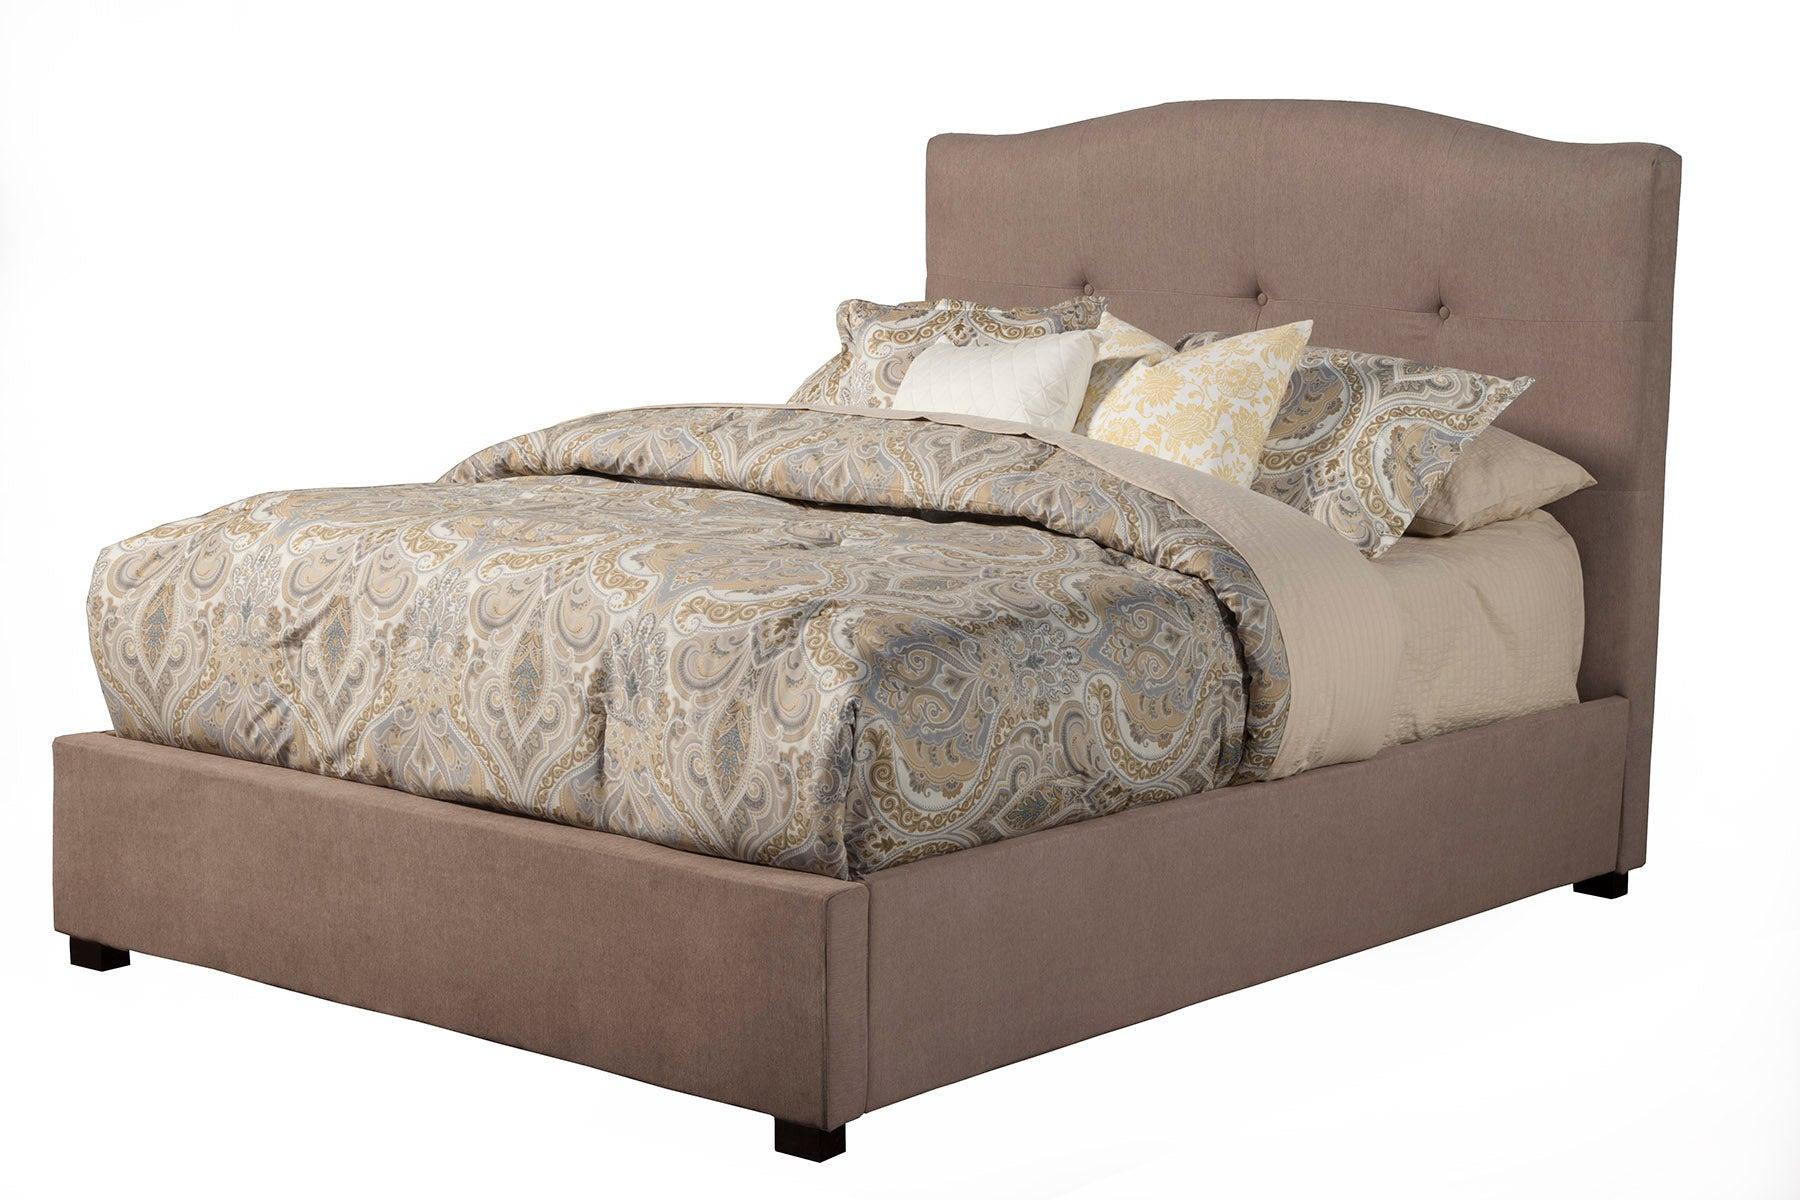 

    
Haskett/Jute Full Tufted Upholstered Bed Amanda ALPINE Modern Contemporary
